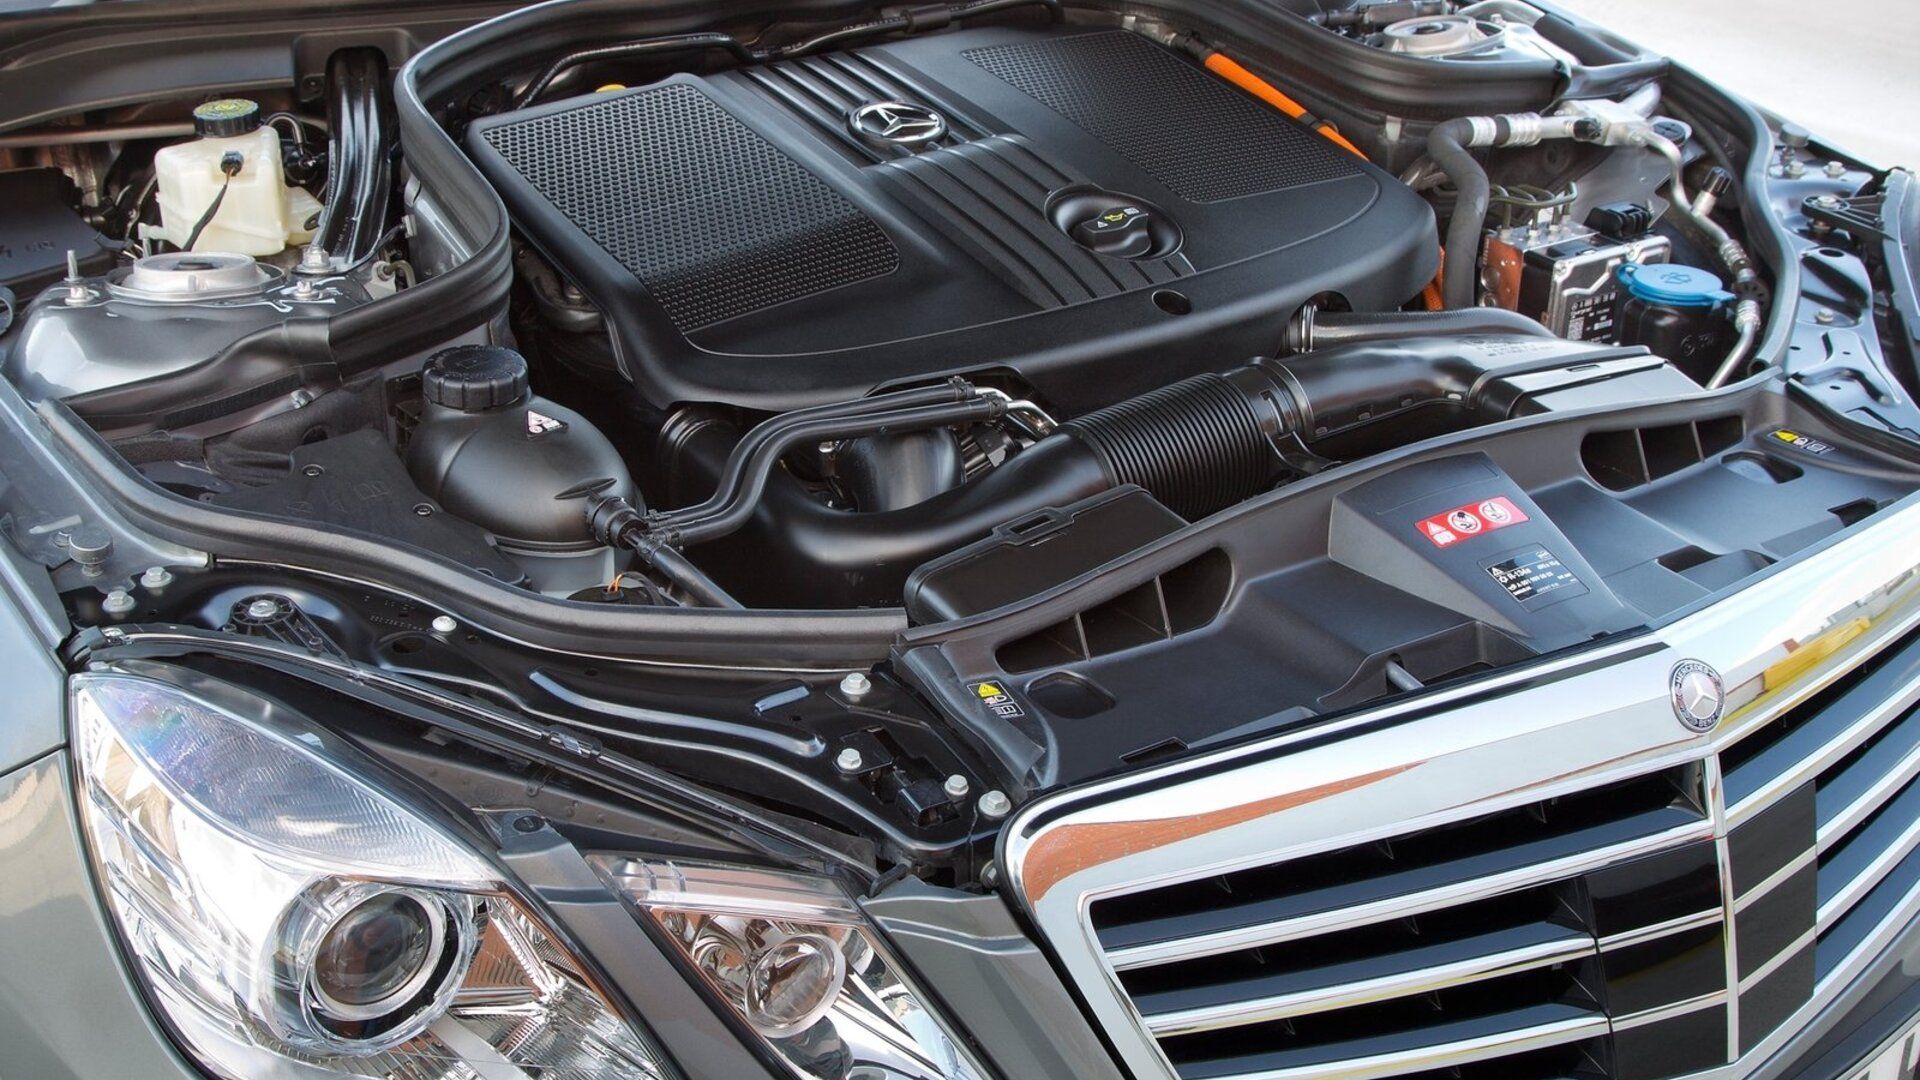 Mercedes-Benz E300 BlueTEC Hybrid 2013 Engine